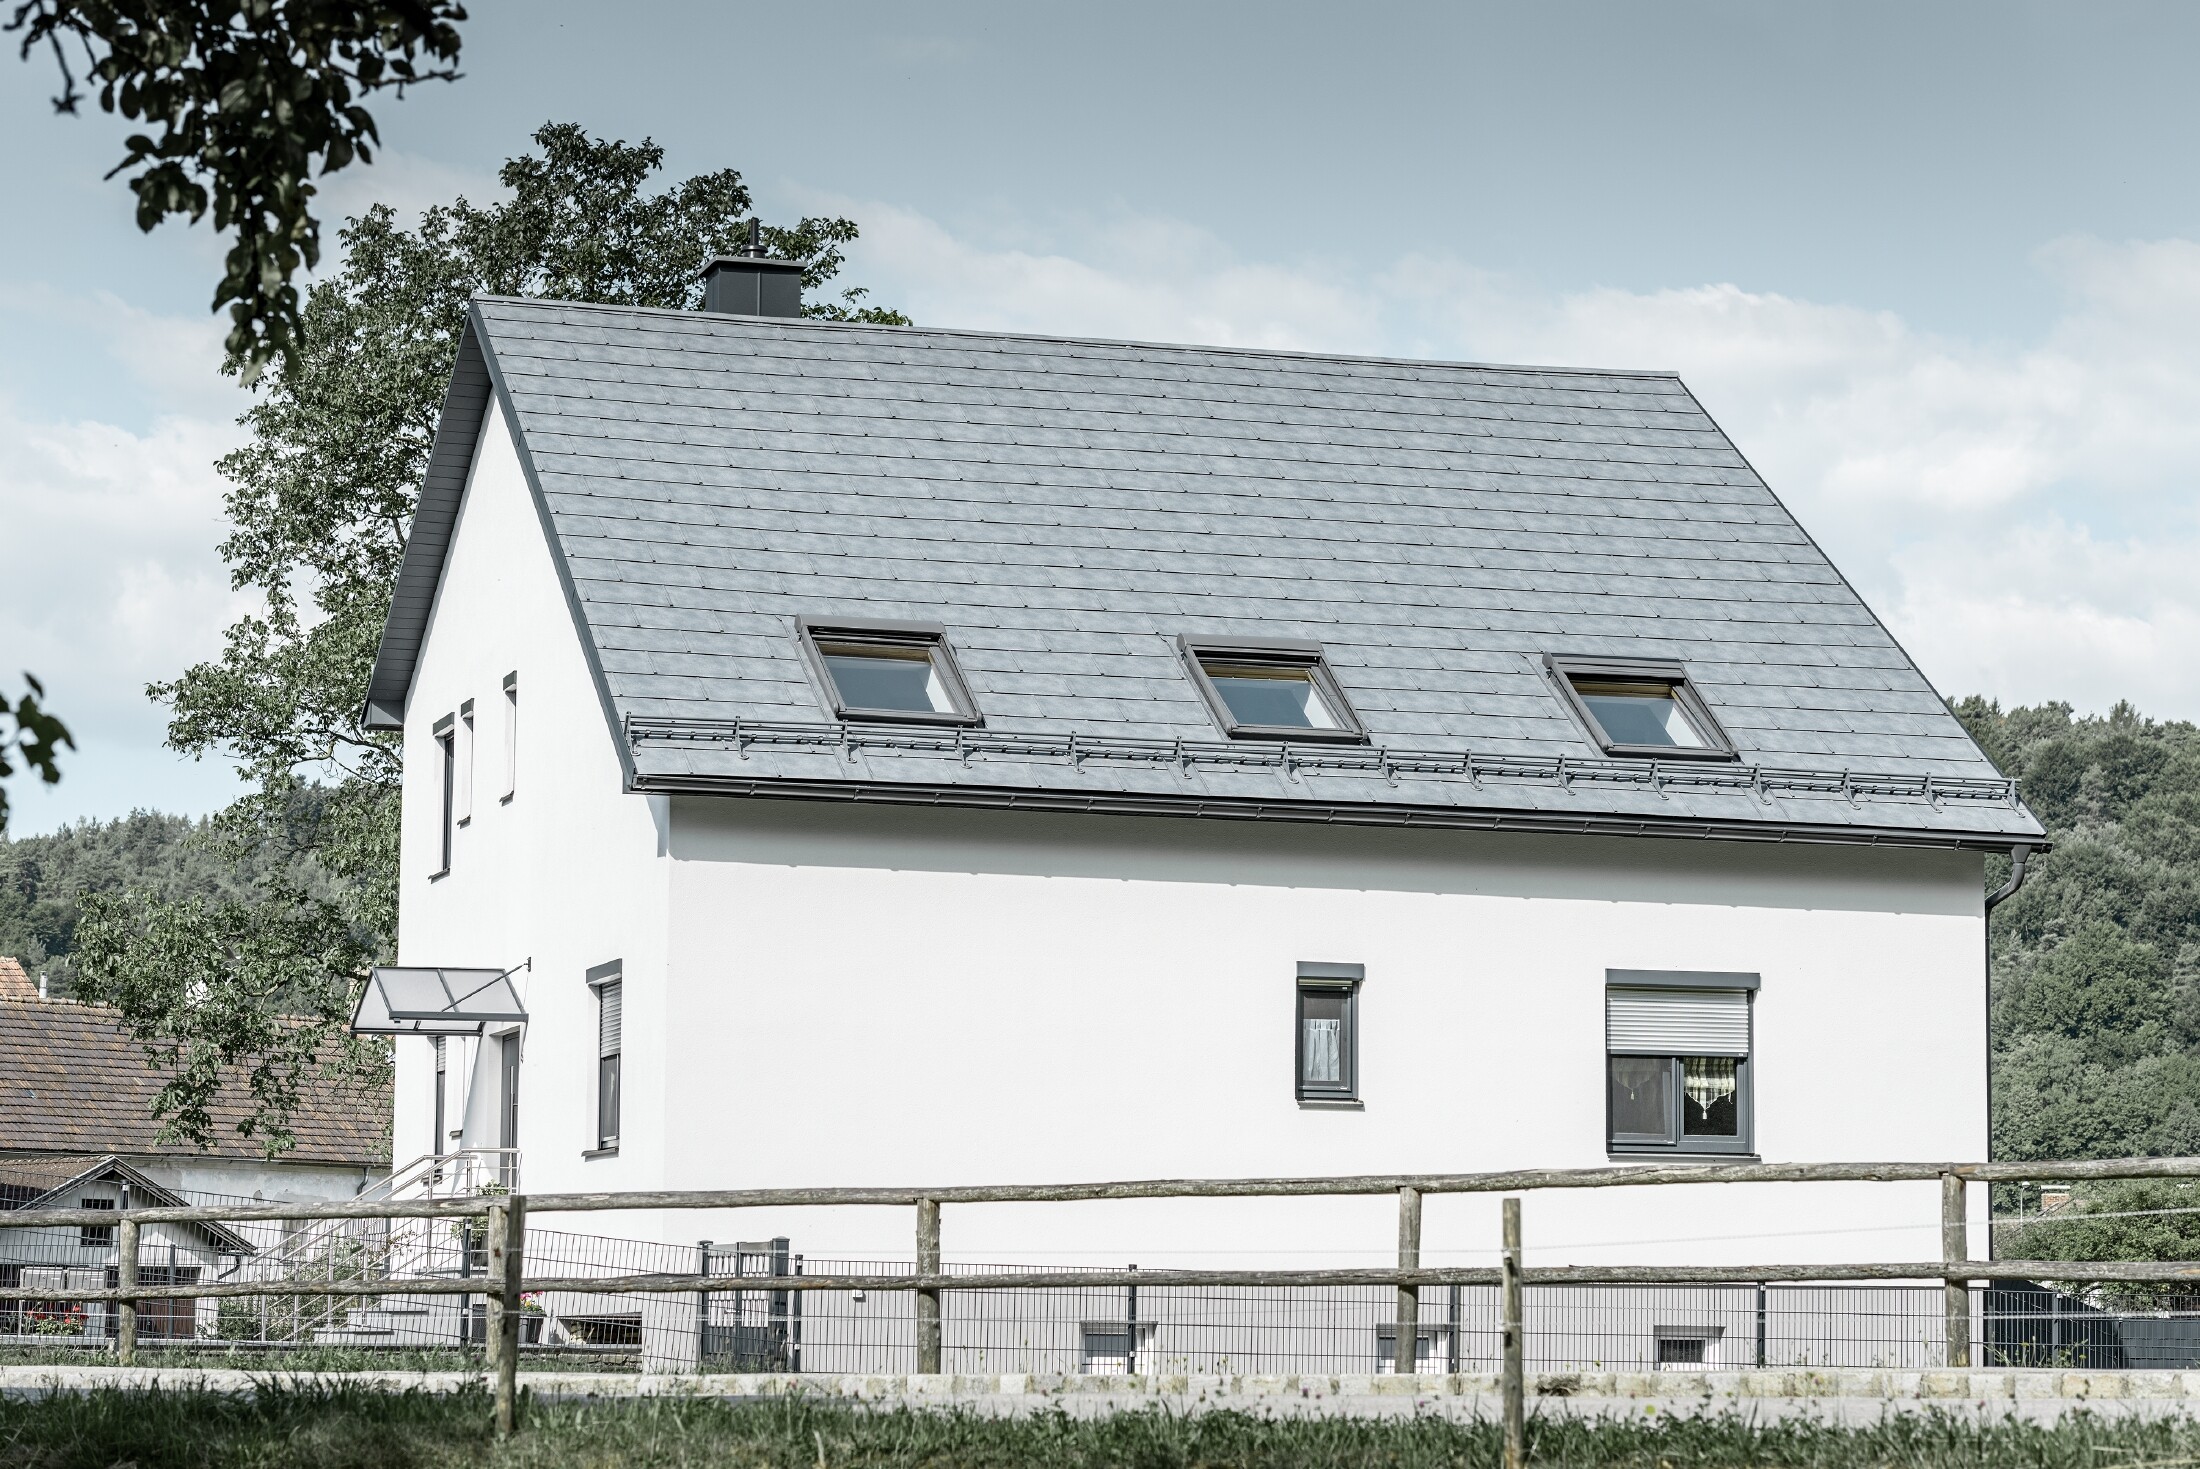 Dach dwuspadowy klasycznego domu jednorodzinnego został pokryty nową dachówką klasyczną R.16 PREFA w kolorze szarym kamiennym. W połaci dachowej wkomponowano trzy okna dachowej i zamontowano bariery śniegowe. Elewacja jest utrzymana w kolorze białym.